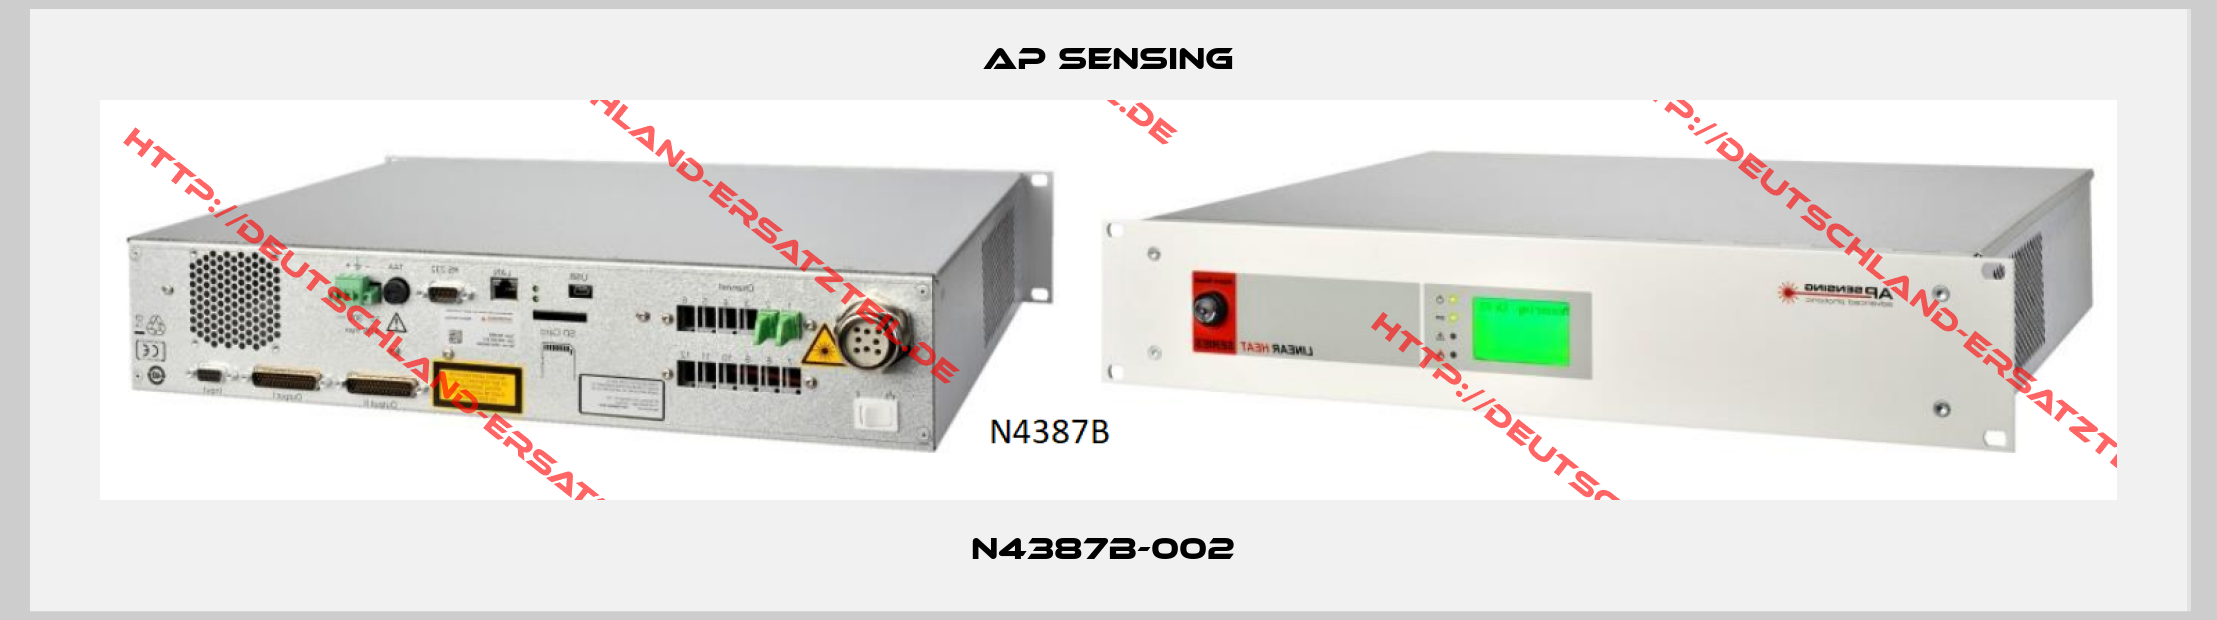 AP Sensing-N4387B-002 